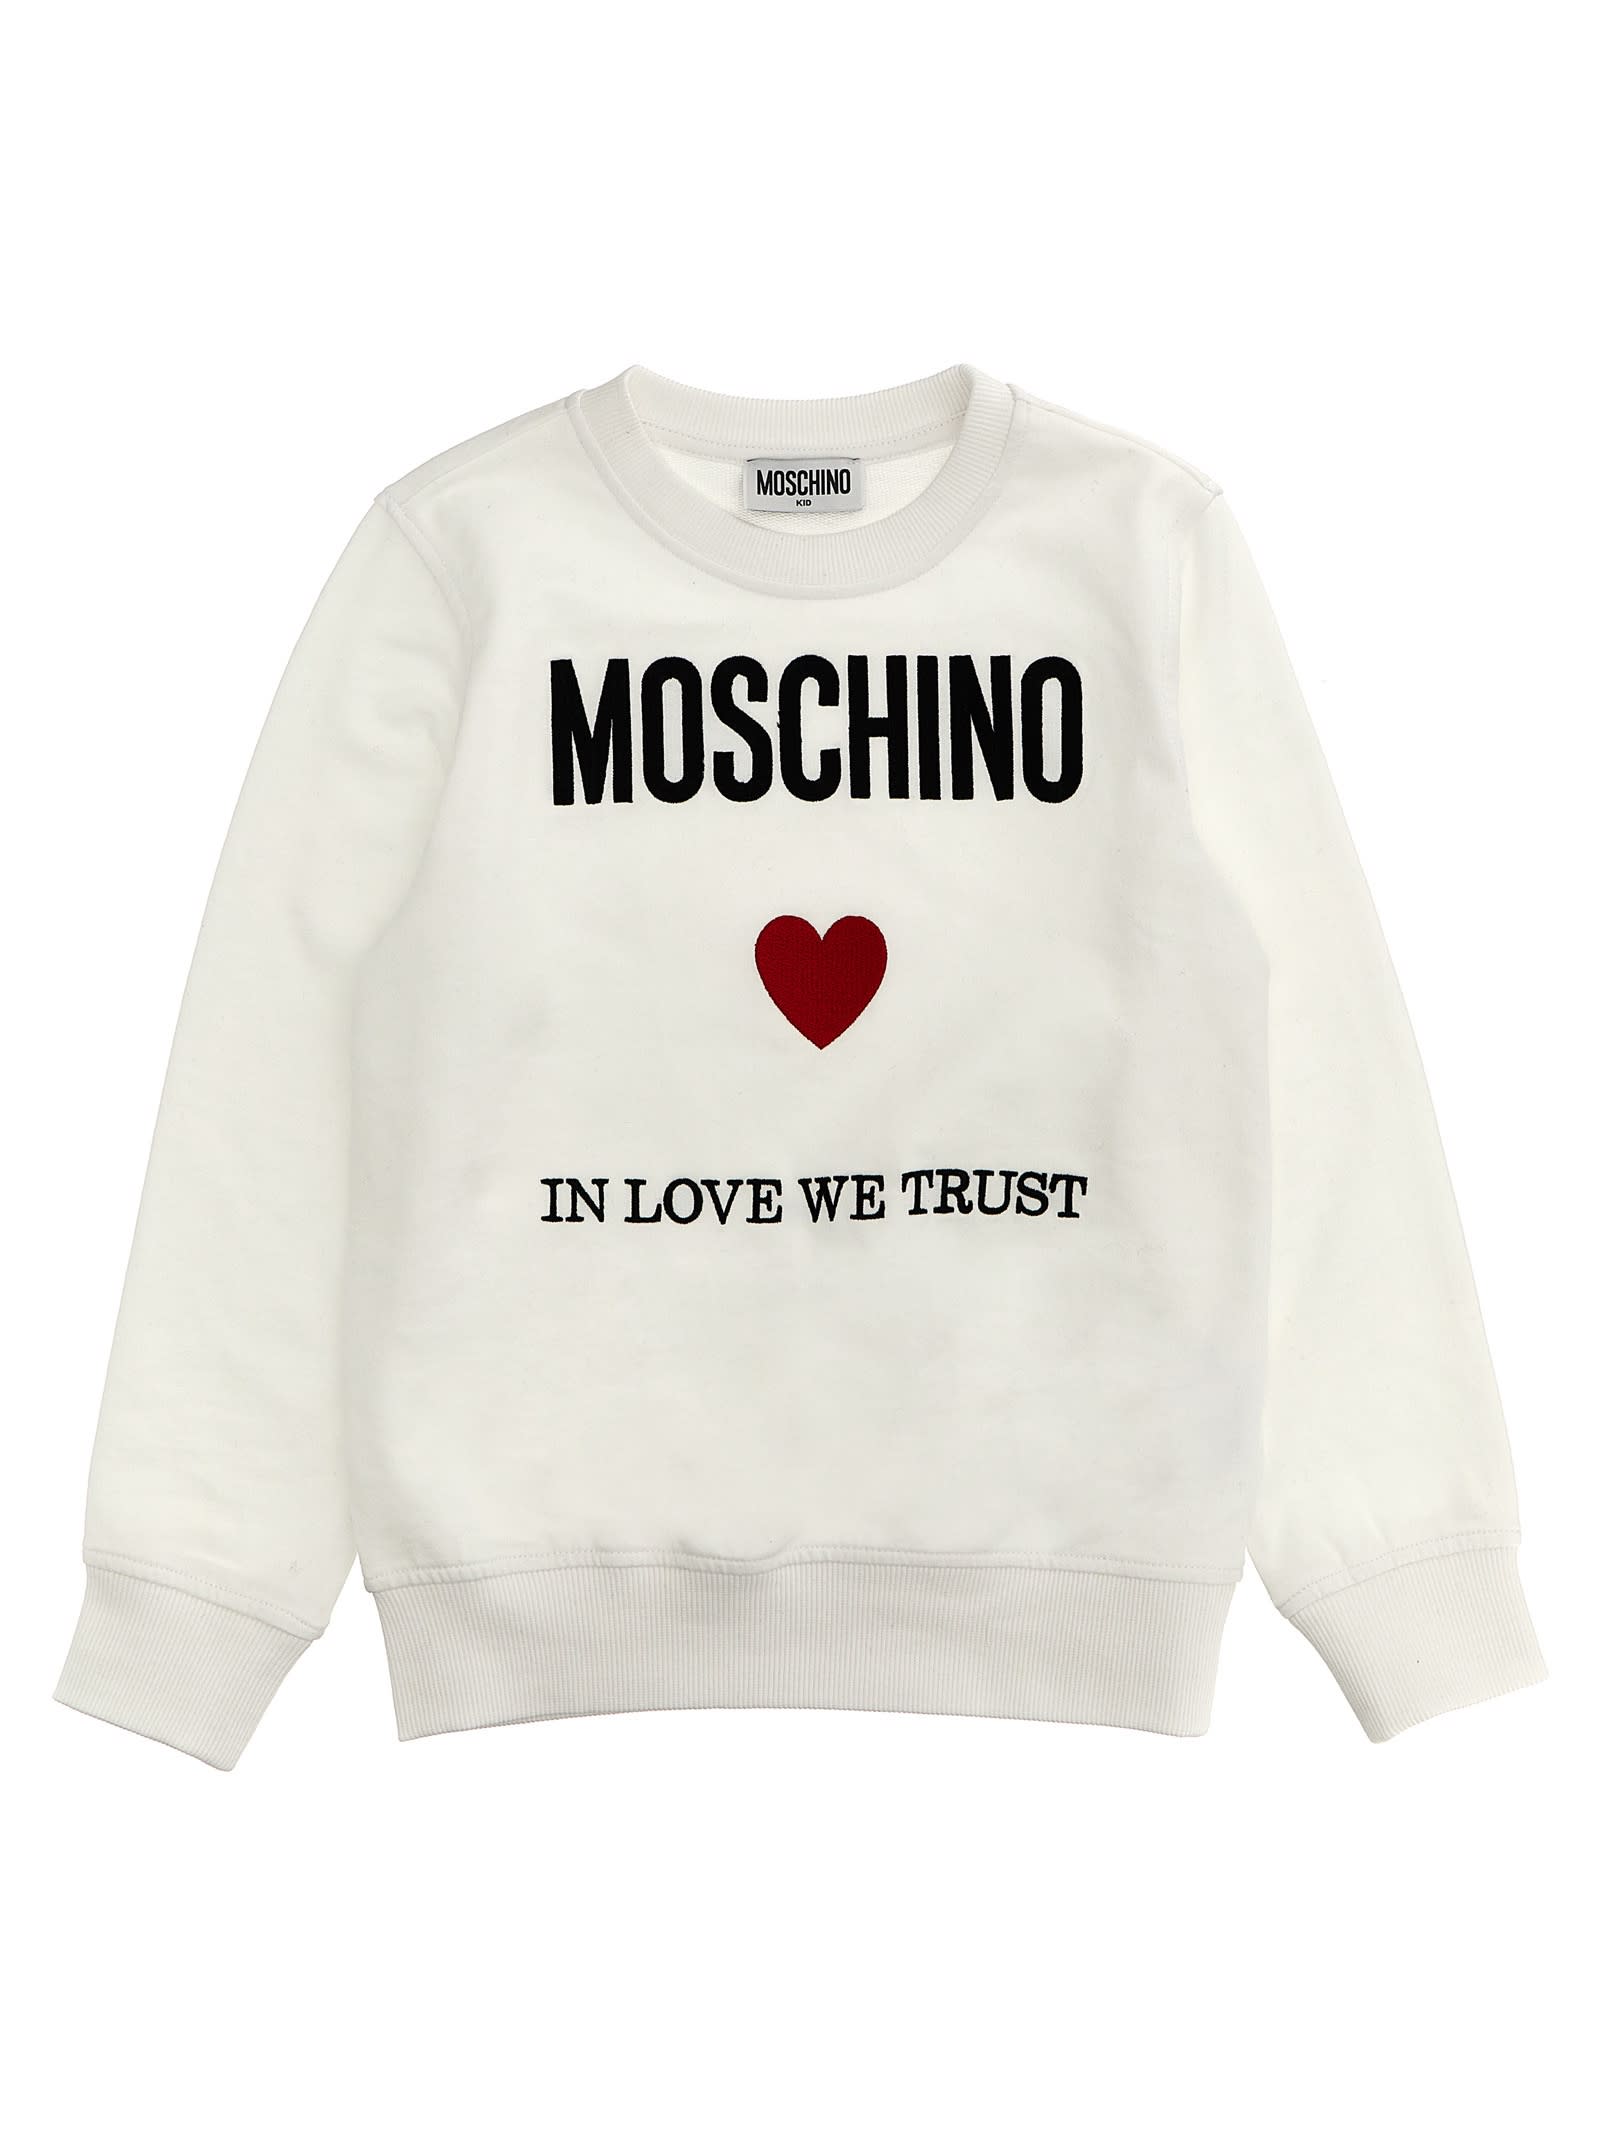 Moschino Kids' In Love We Trust Sweatshirt In White